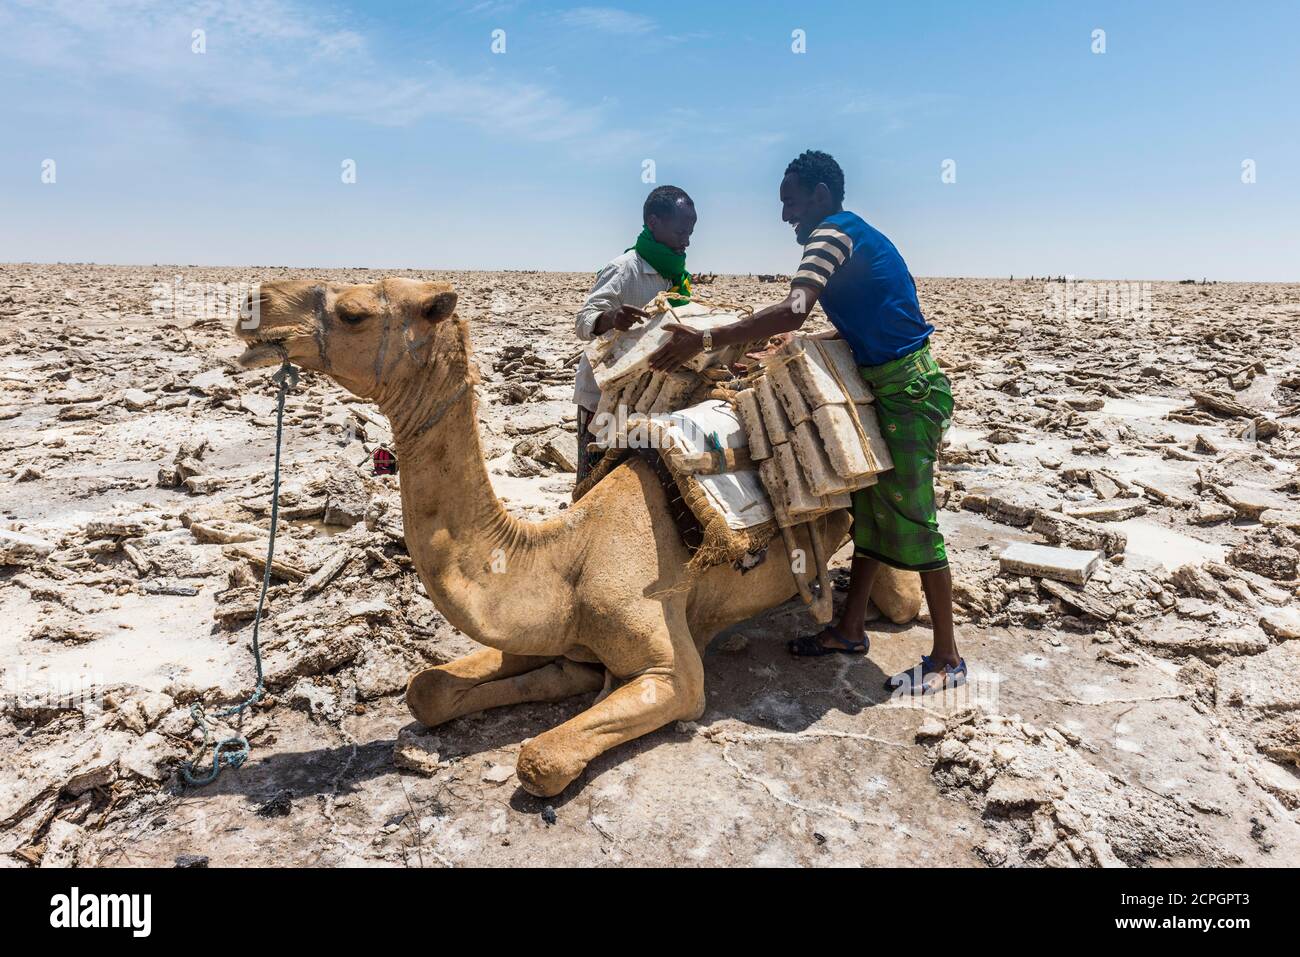 Les nomades afar chargent le dromadaire avec des plaques de sel de lac sec, près de Dallol, Danakil Dépression, région d'Afar, Ethiopie, Afrique Banque D'Images